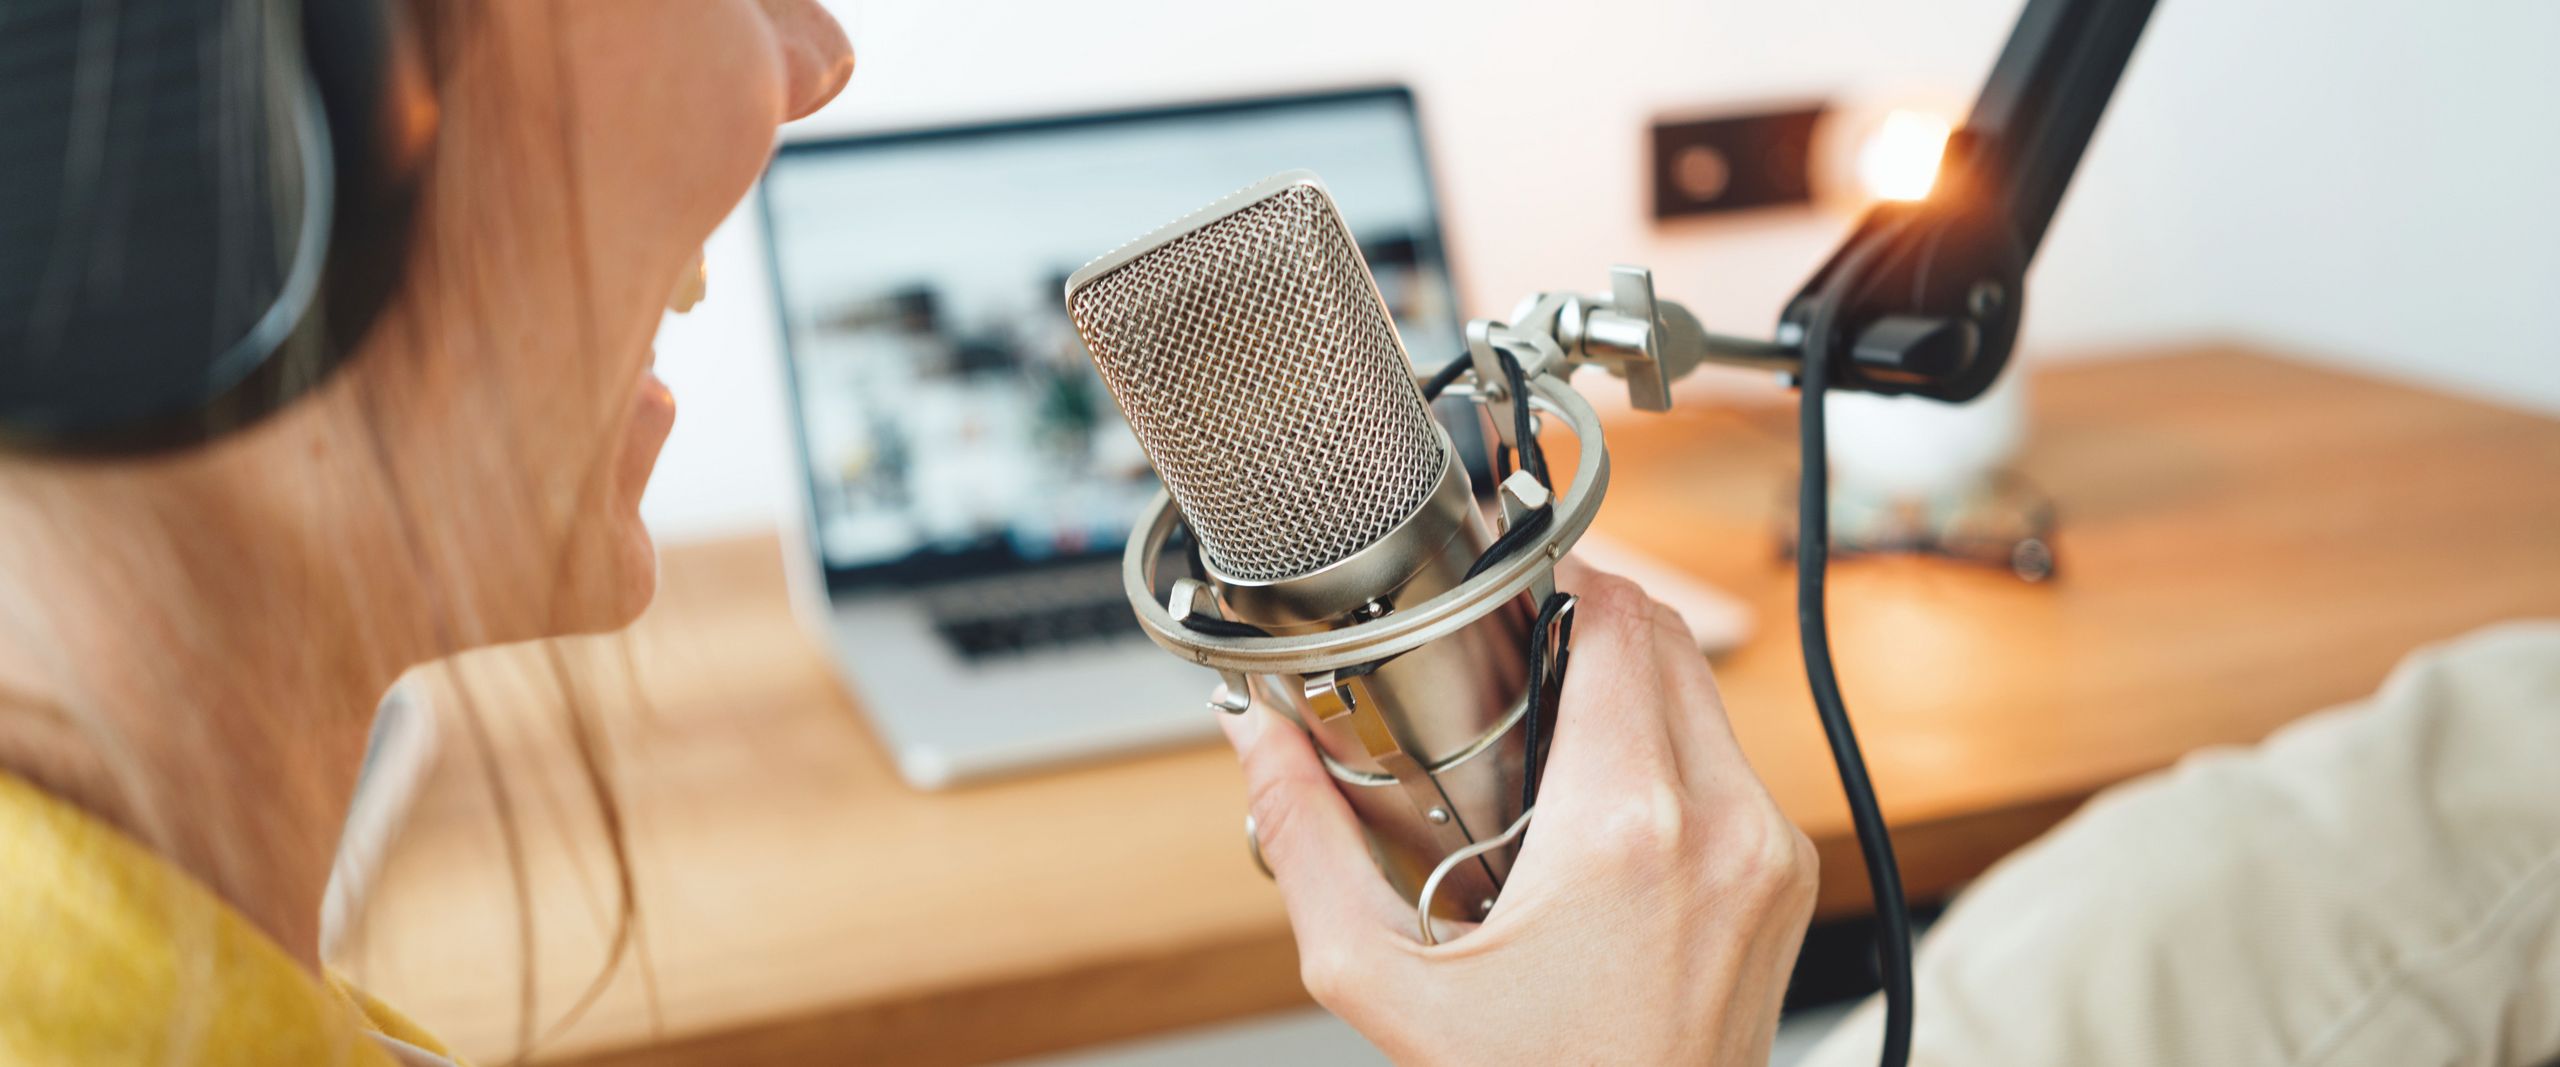 Podcast Aufnahme - Frau spricht ins Mikrofon